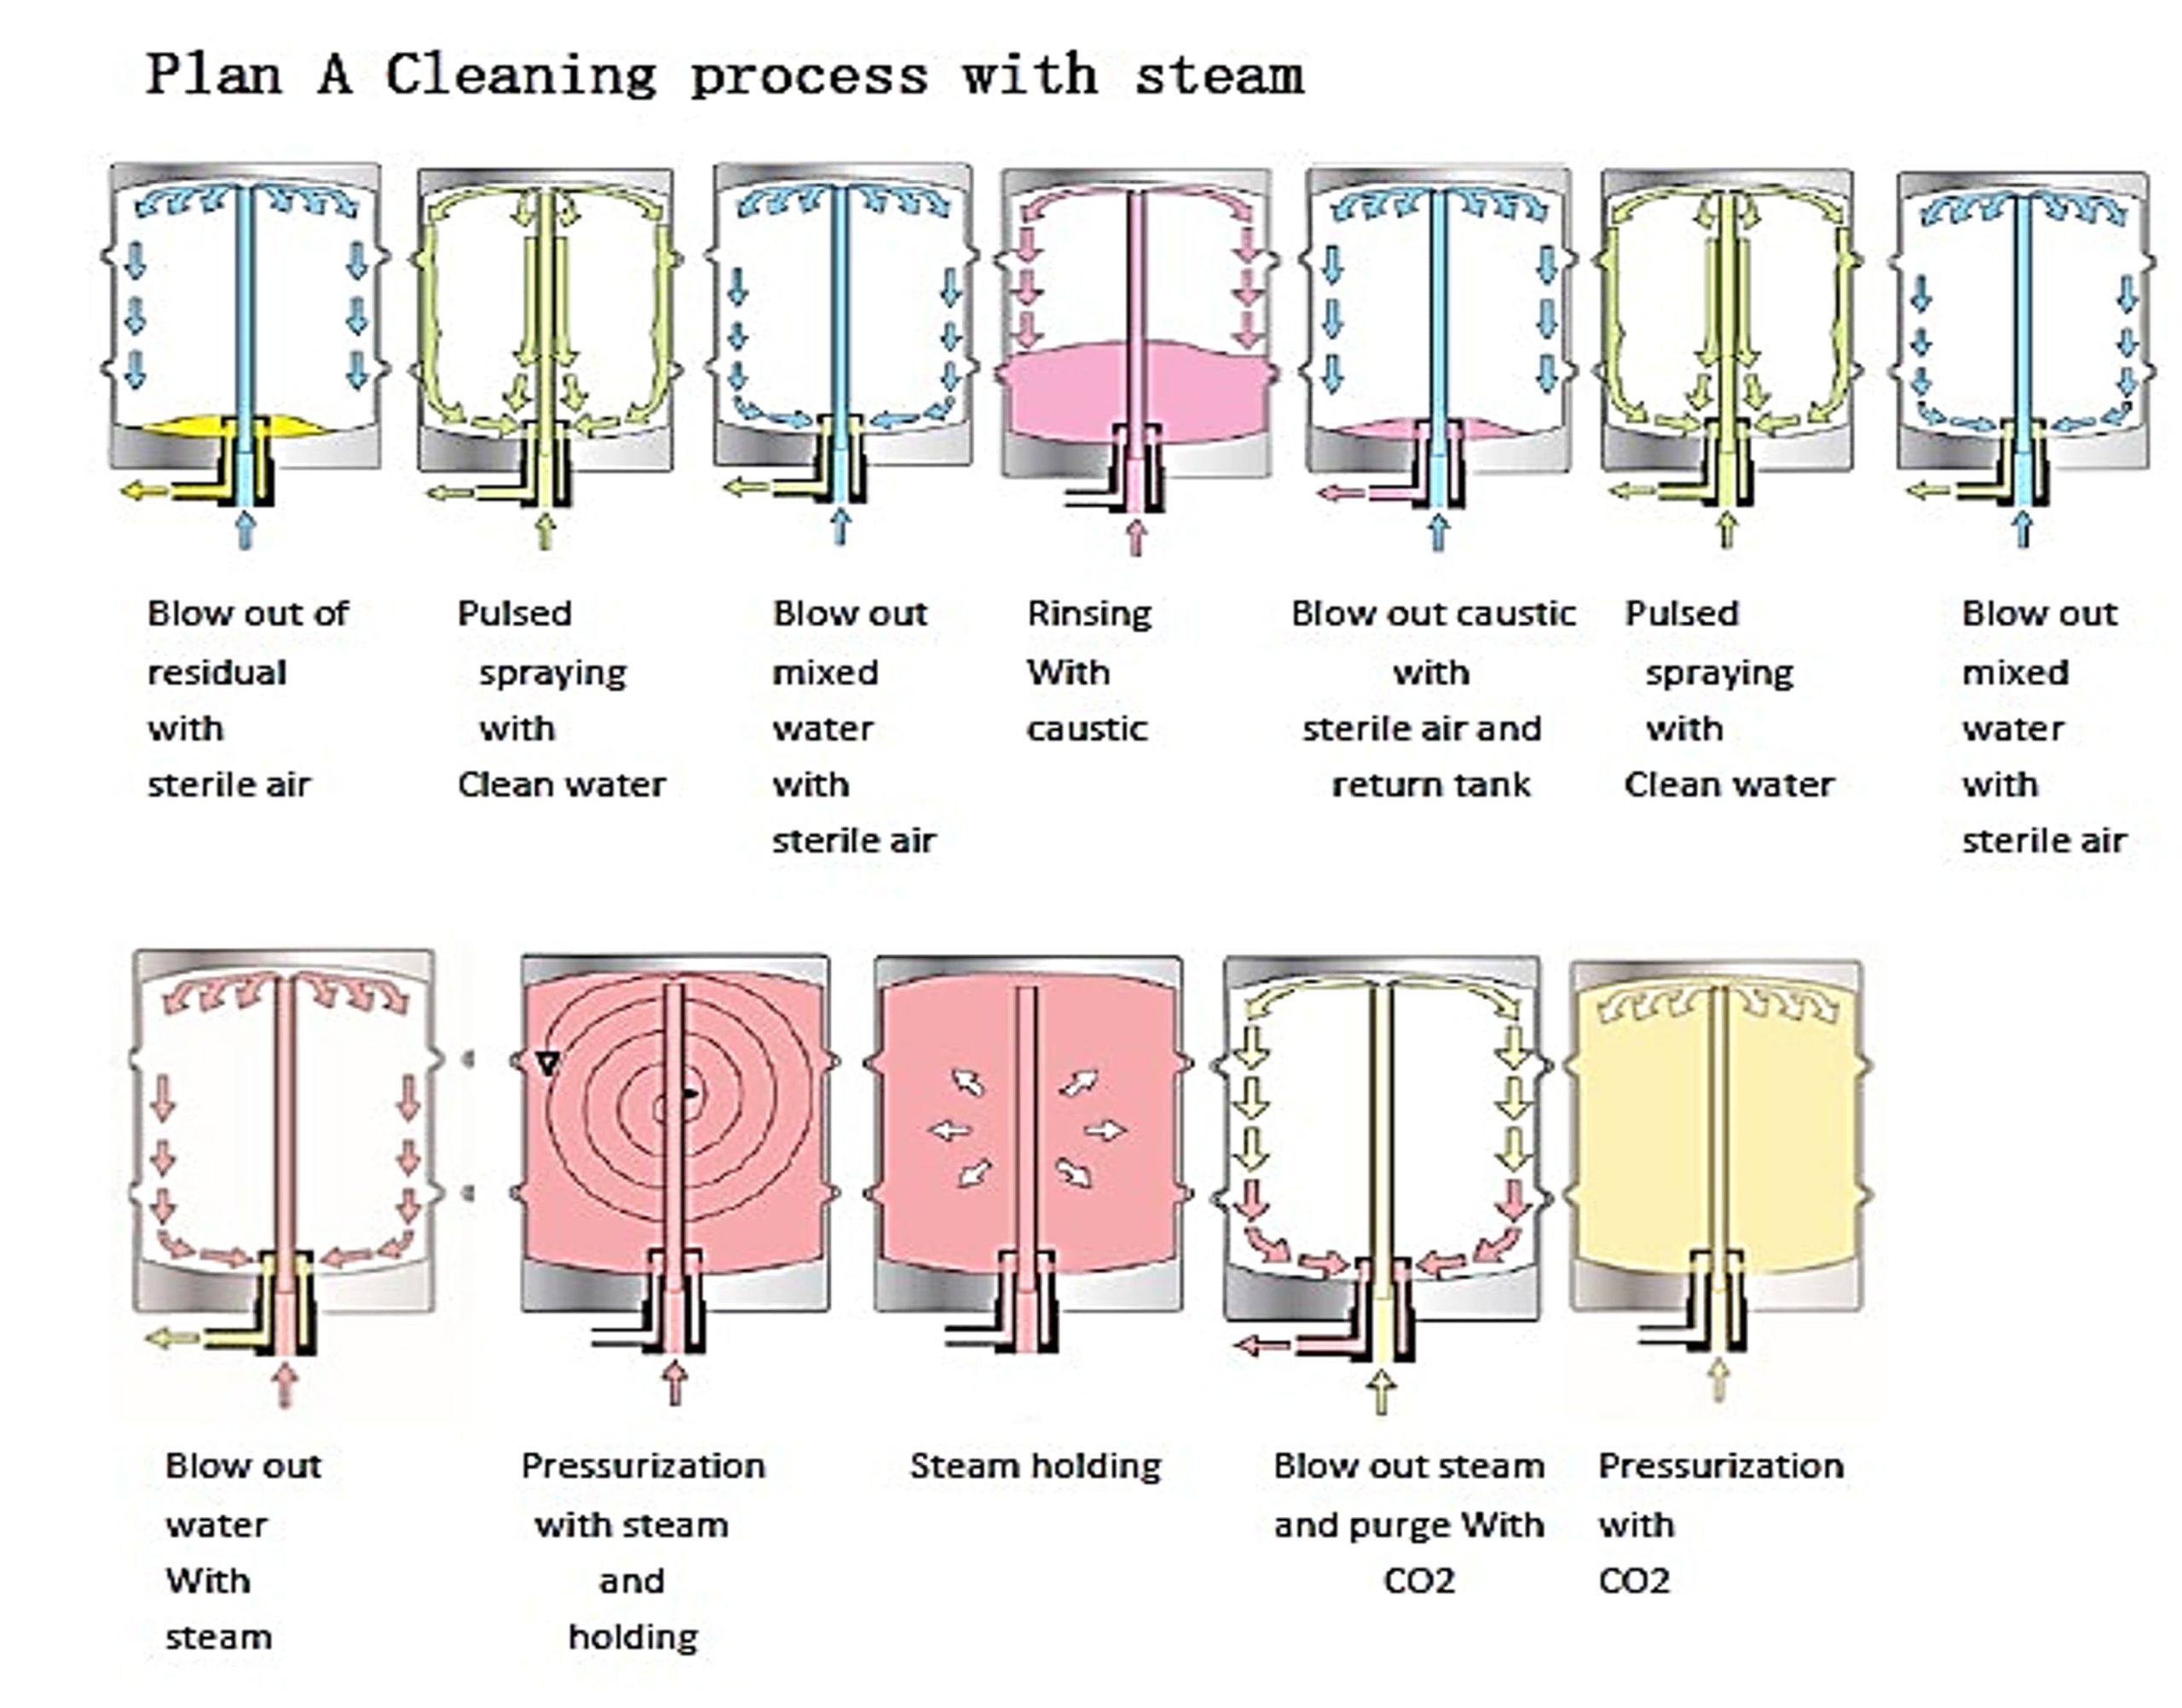 SKE-KW-Ⅱ | Pianificare un processo di pulizia con vapore